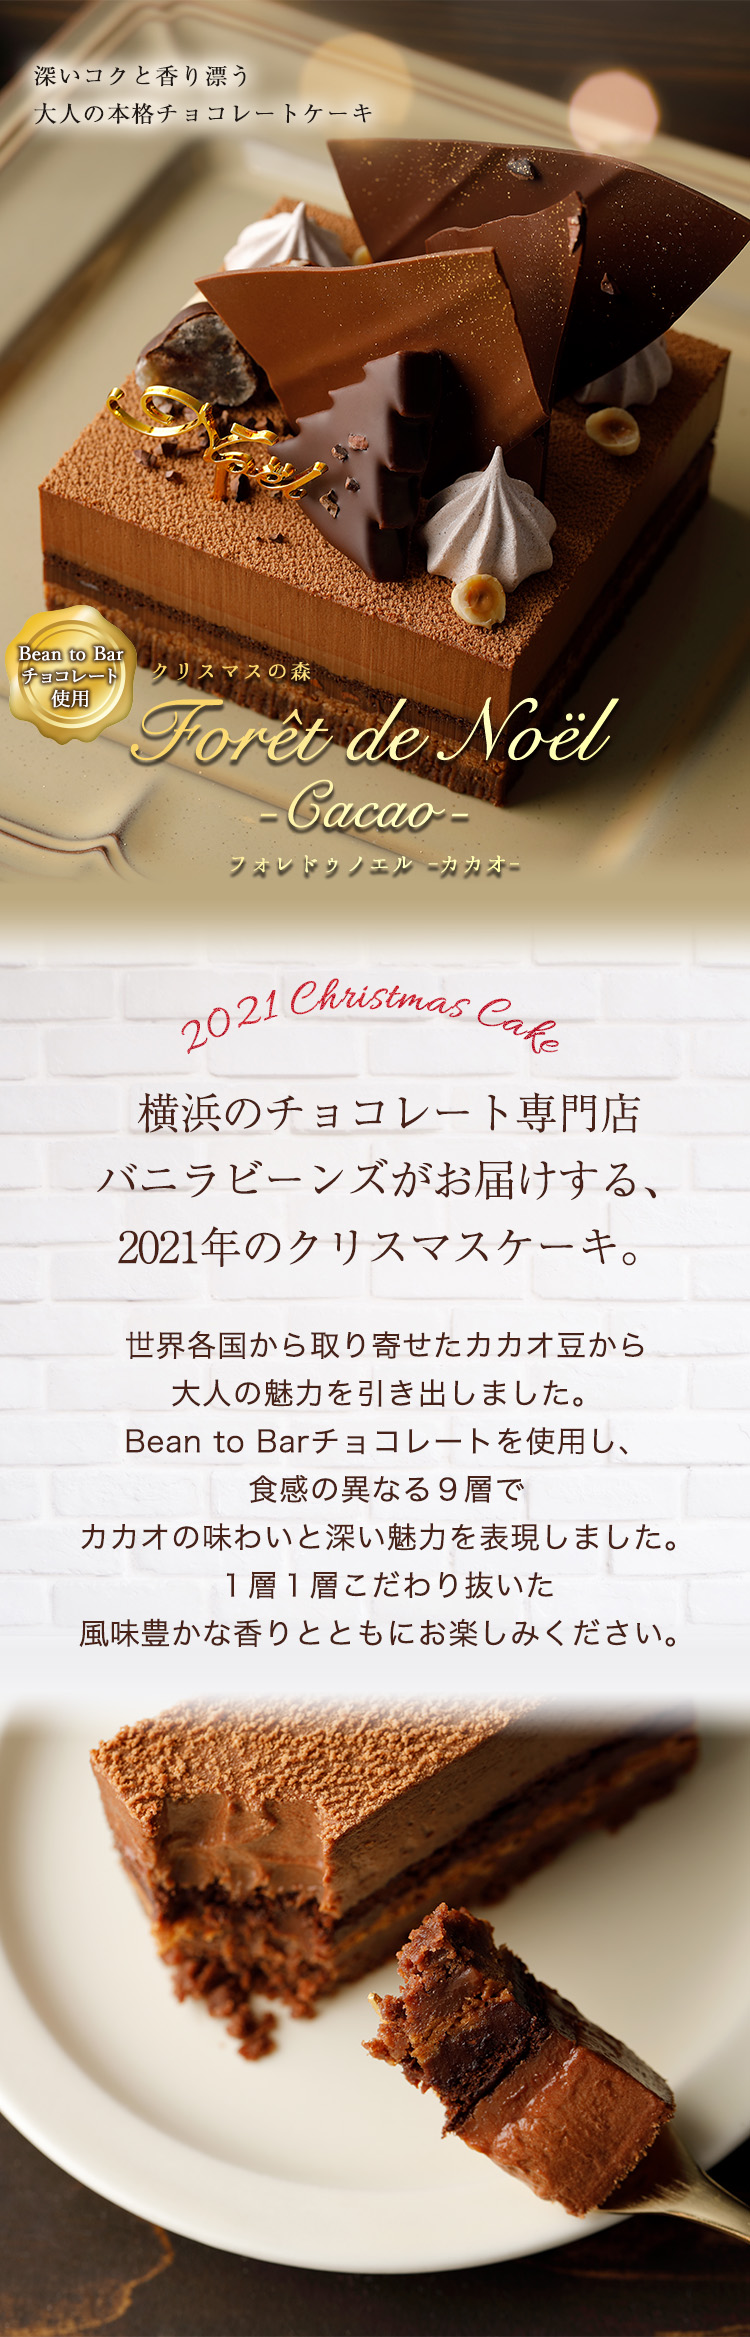 楽天市場 クリスマスケーキ 21 フォレドゥノエル カカオ 12 31着迄 横浜チョコレートのバニラビーンズ